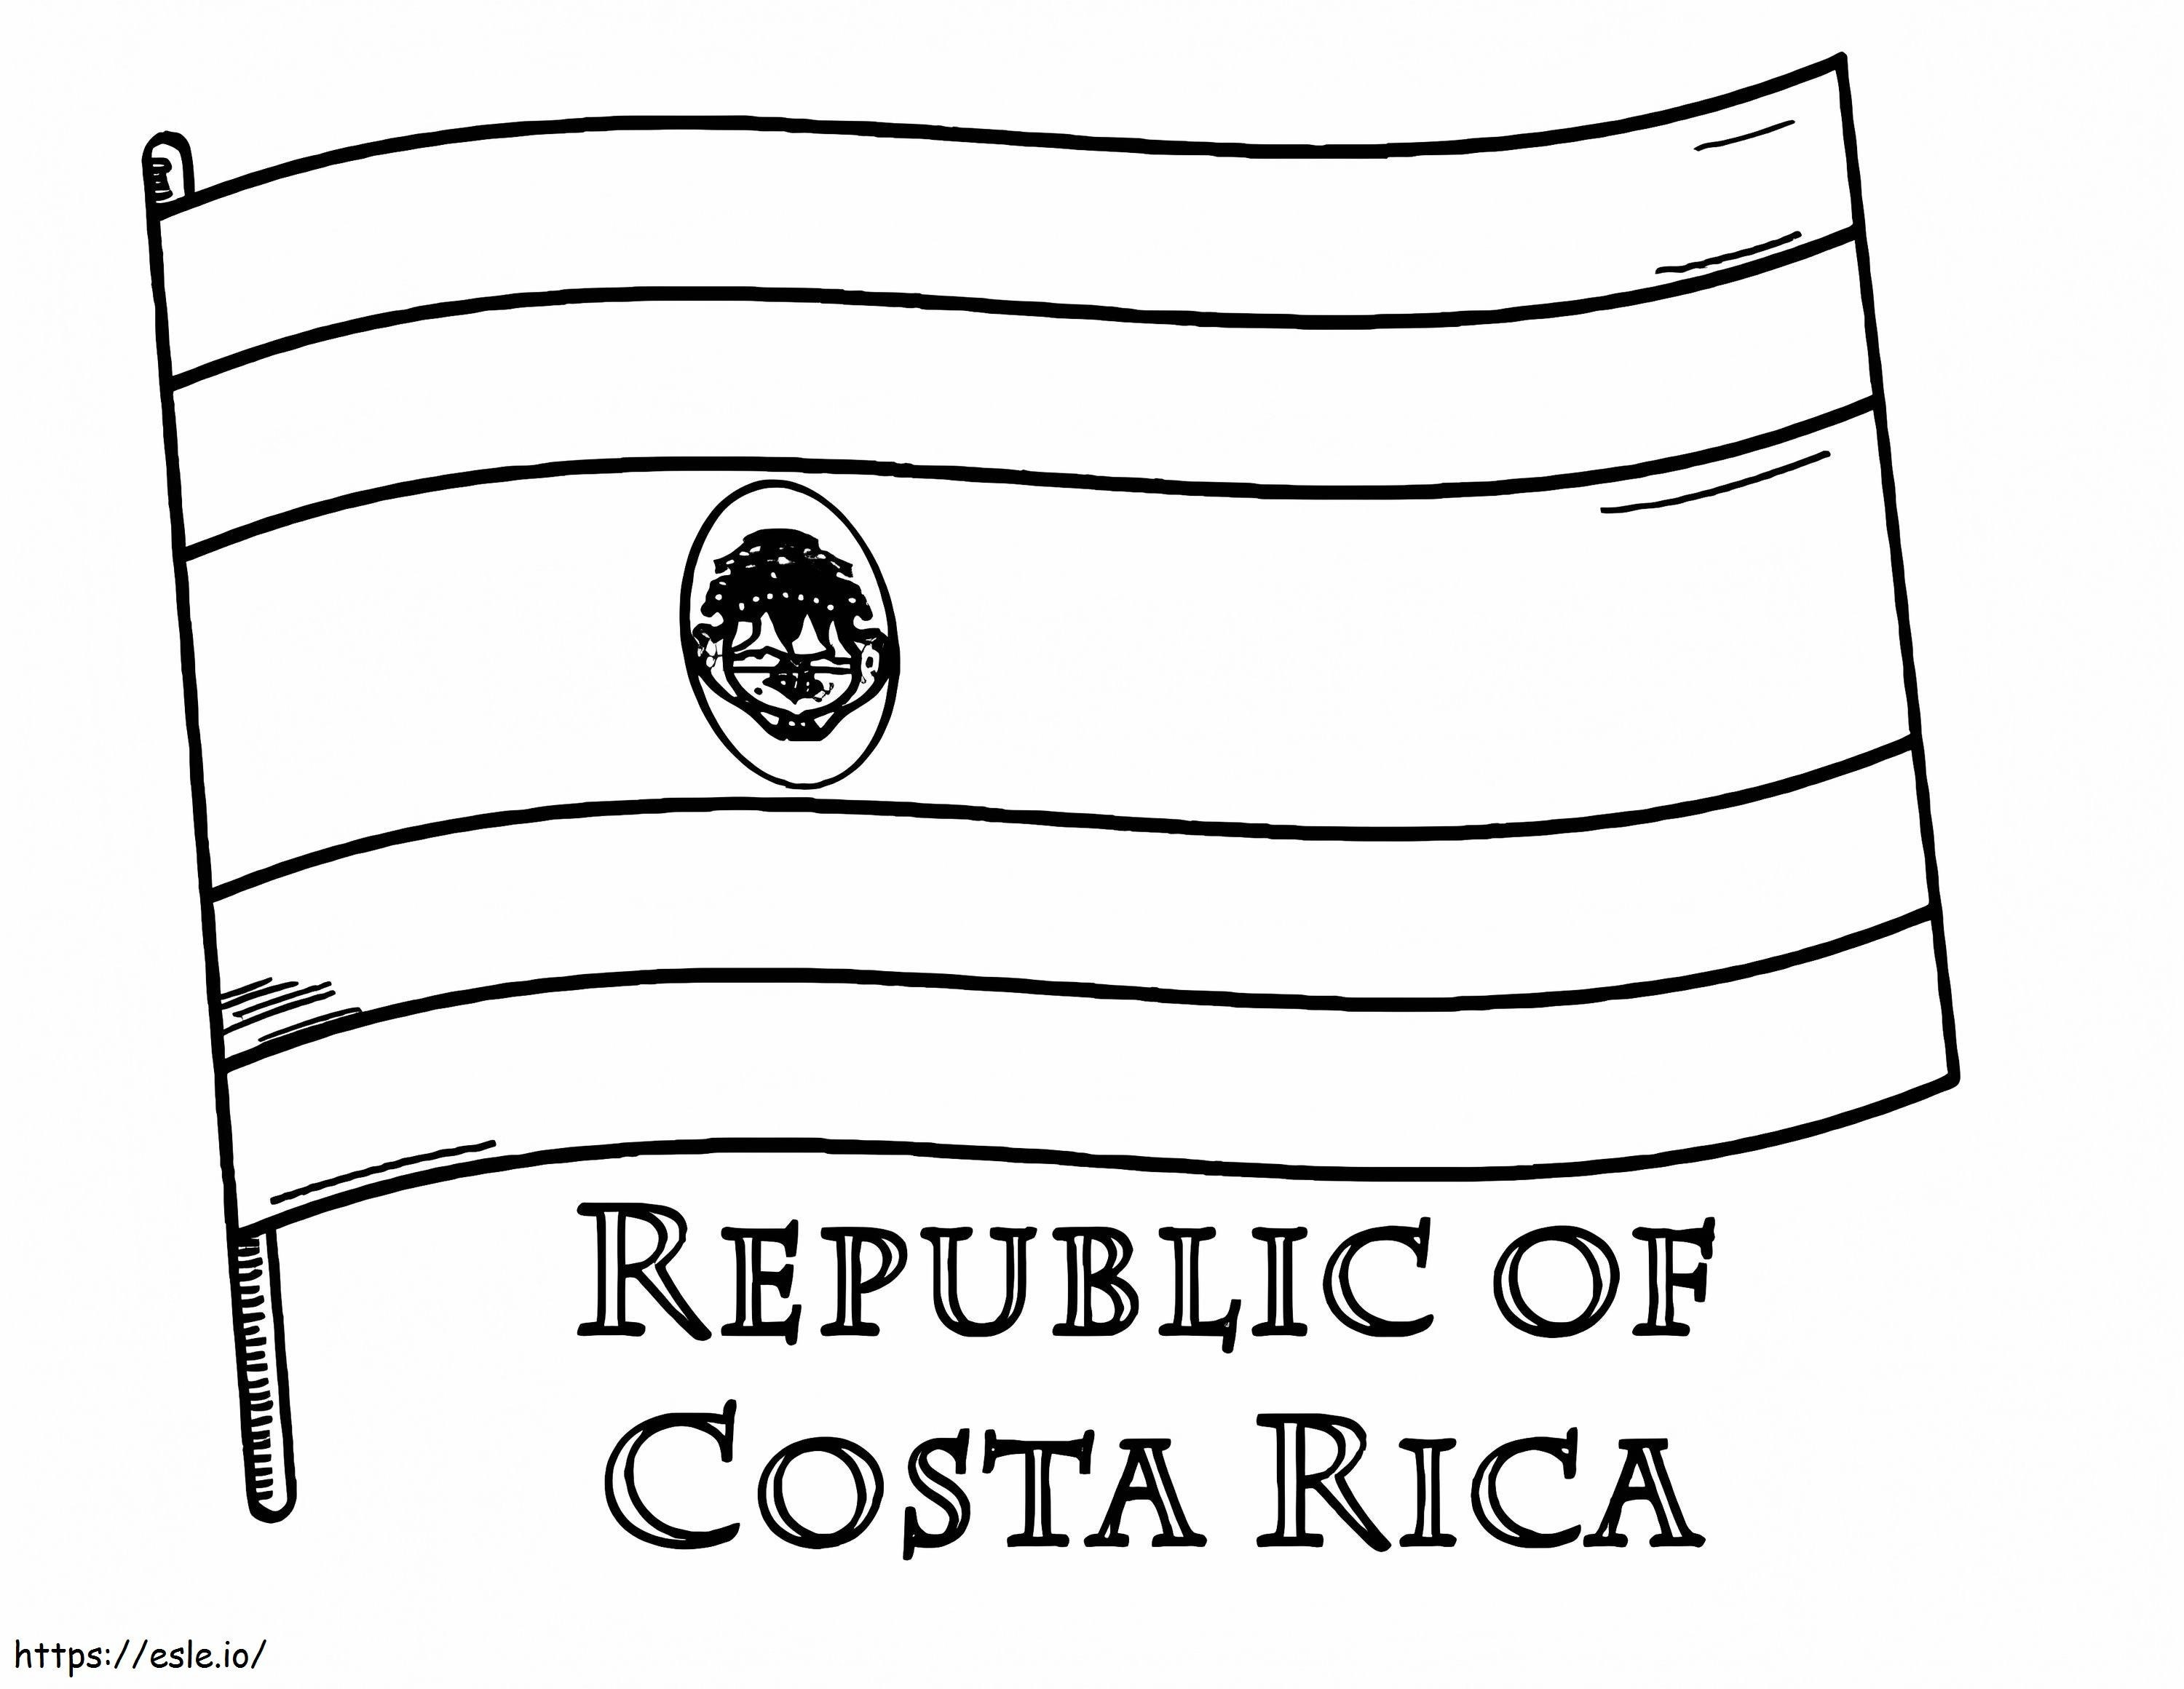 Bandera De Costa Rica para colorear